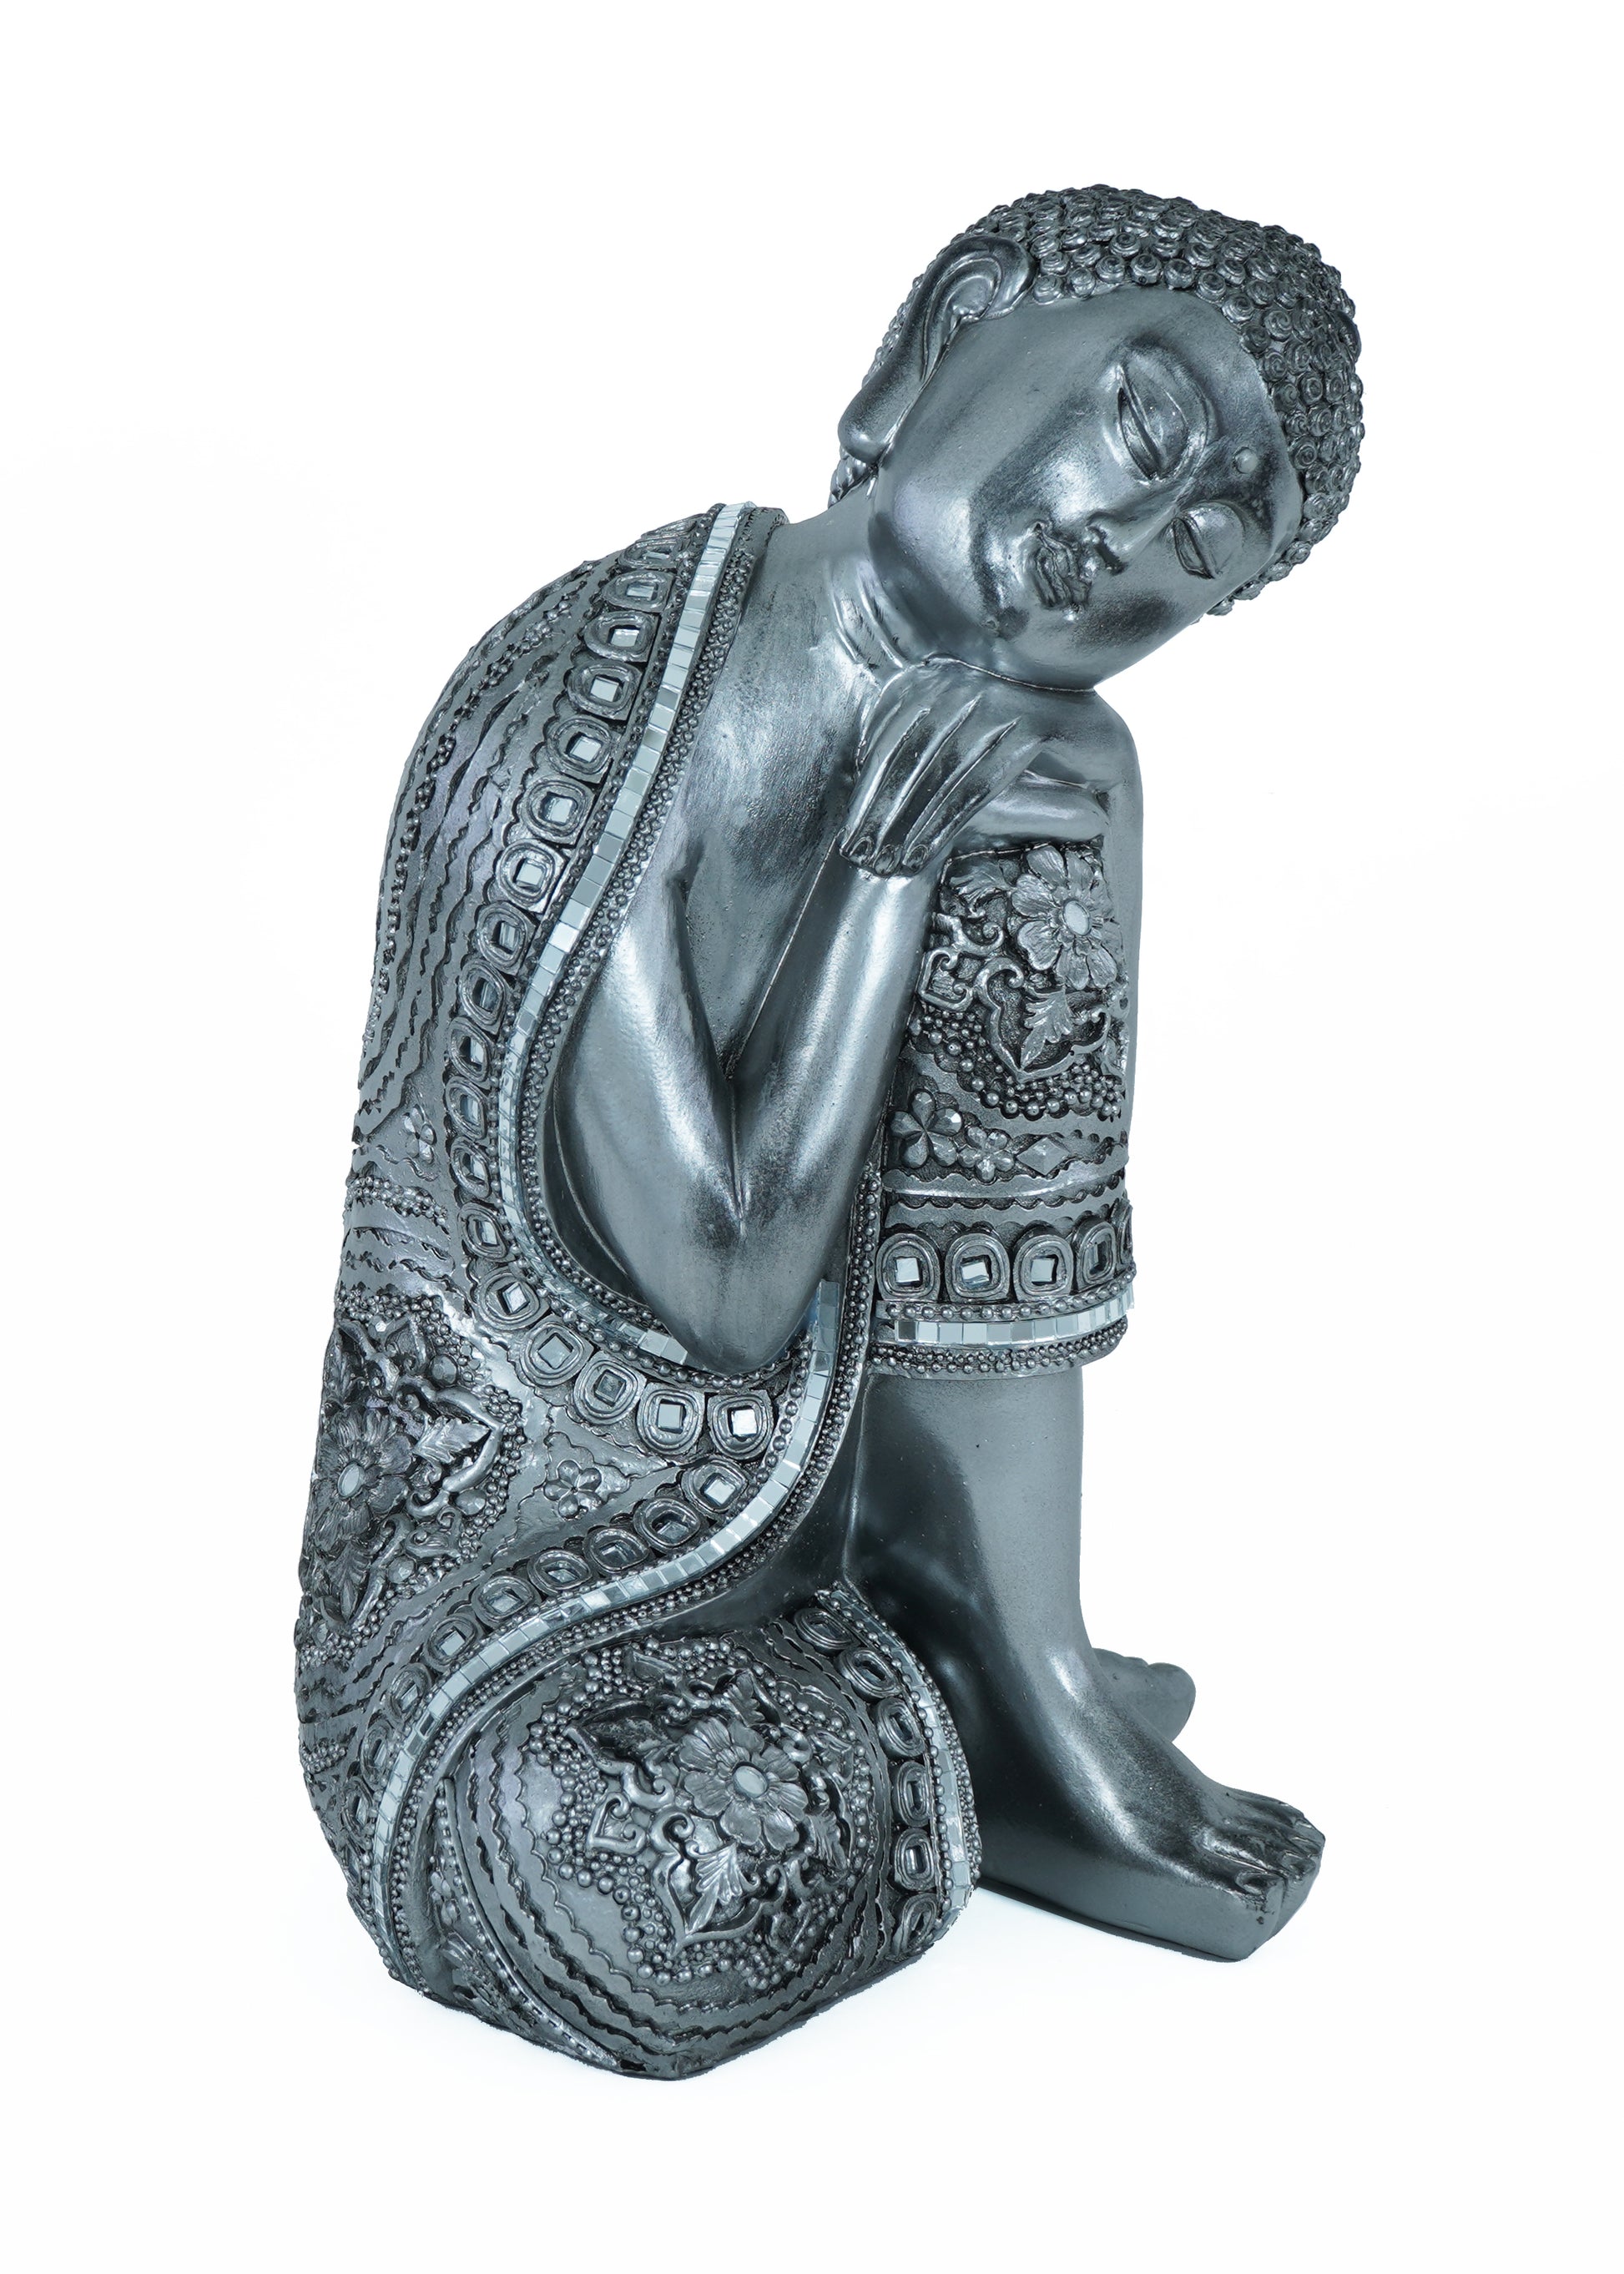 Sleeping Silver Buddha Sculpture - Expo Home Decor